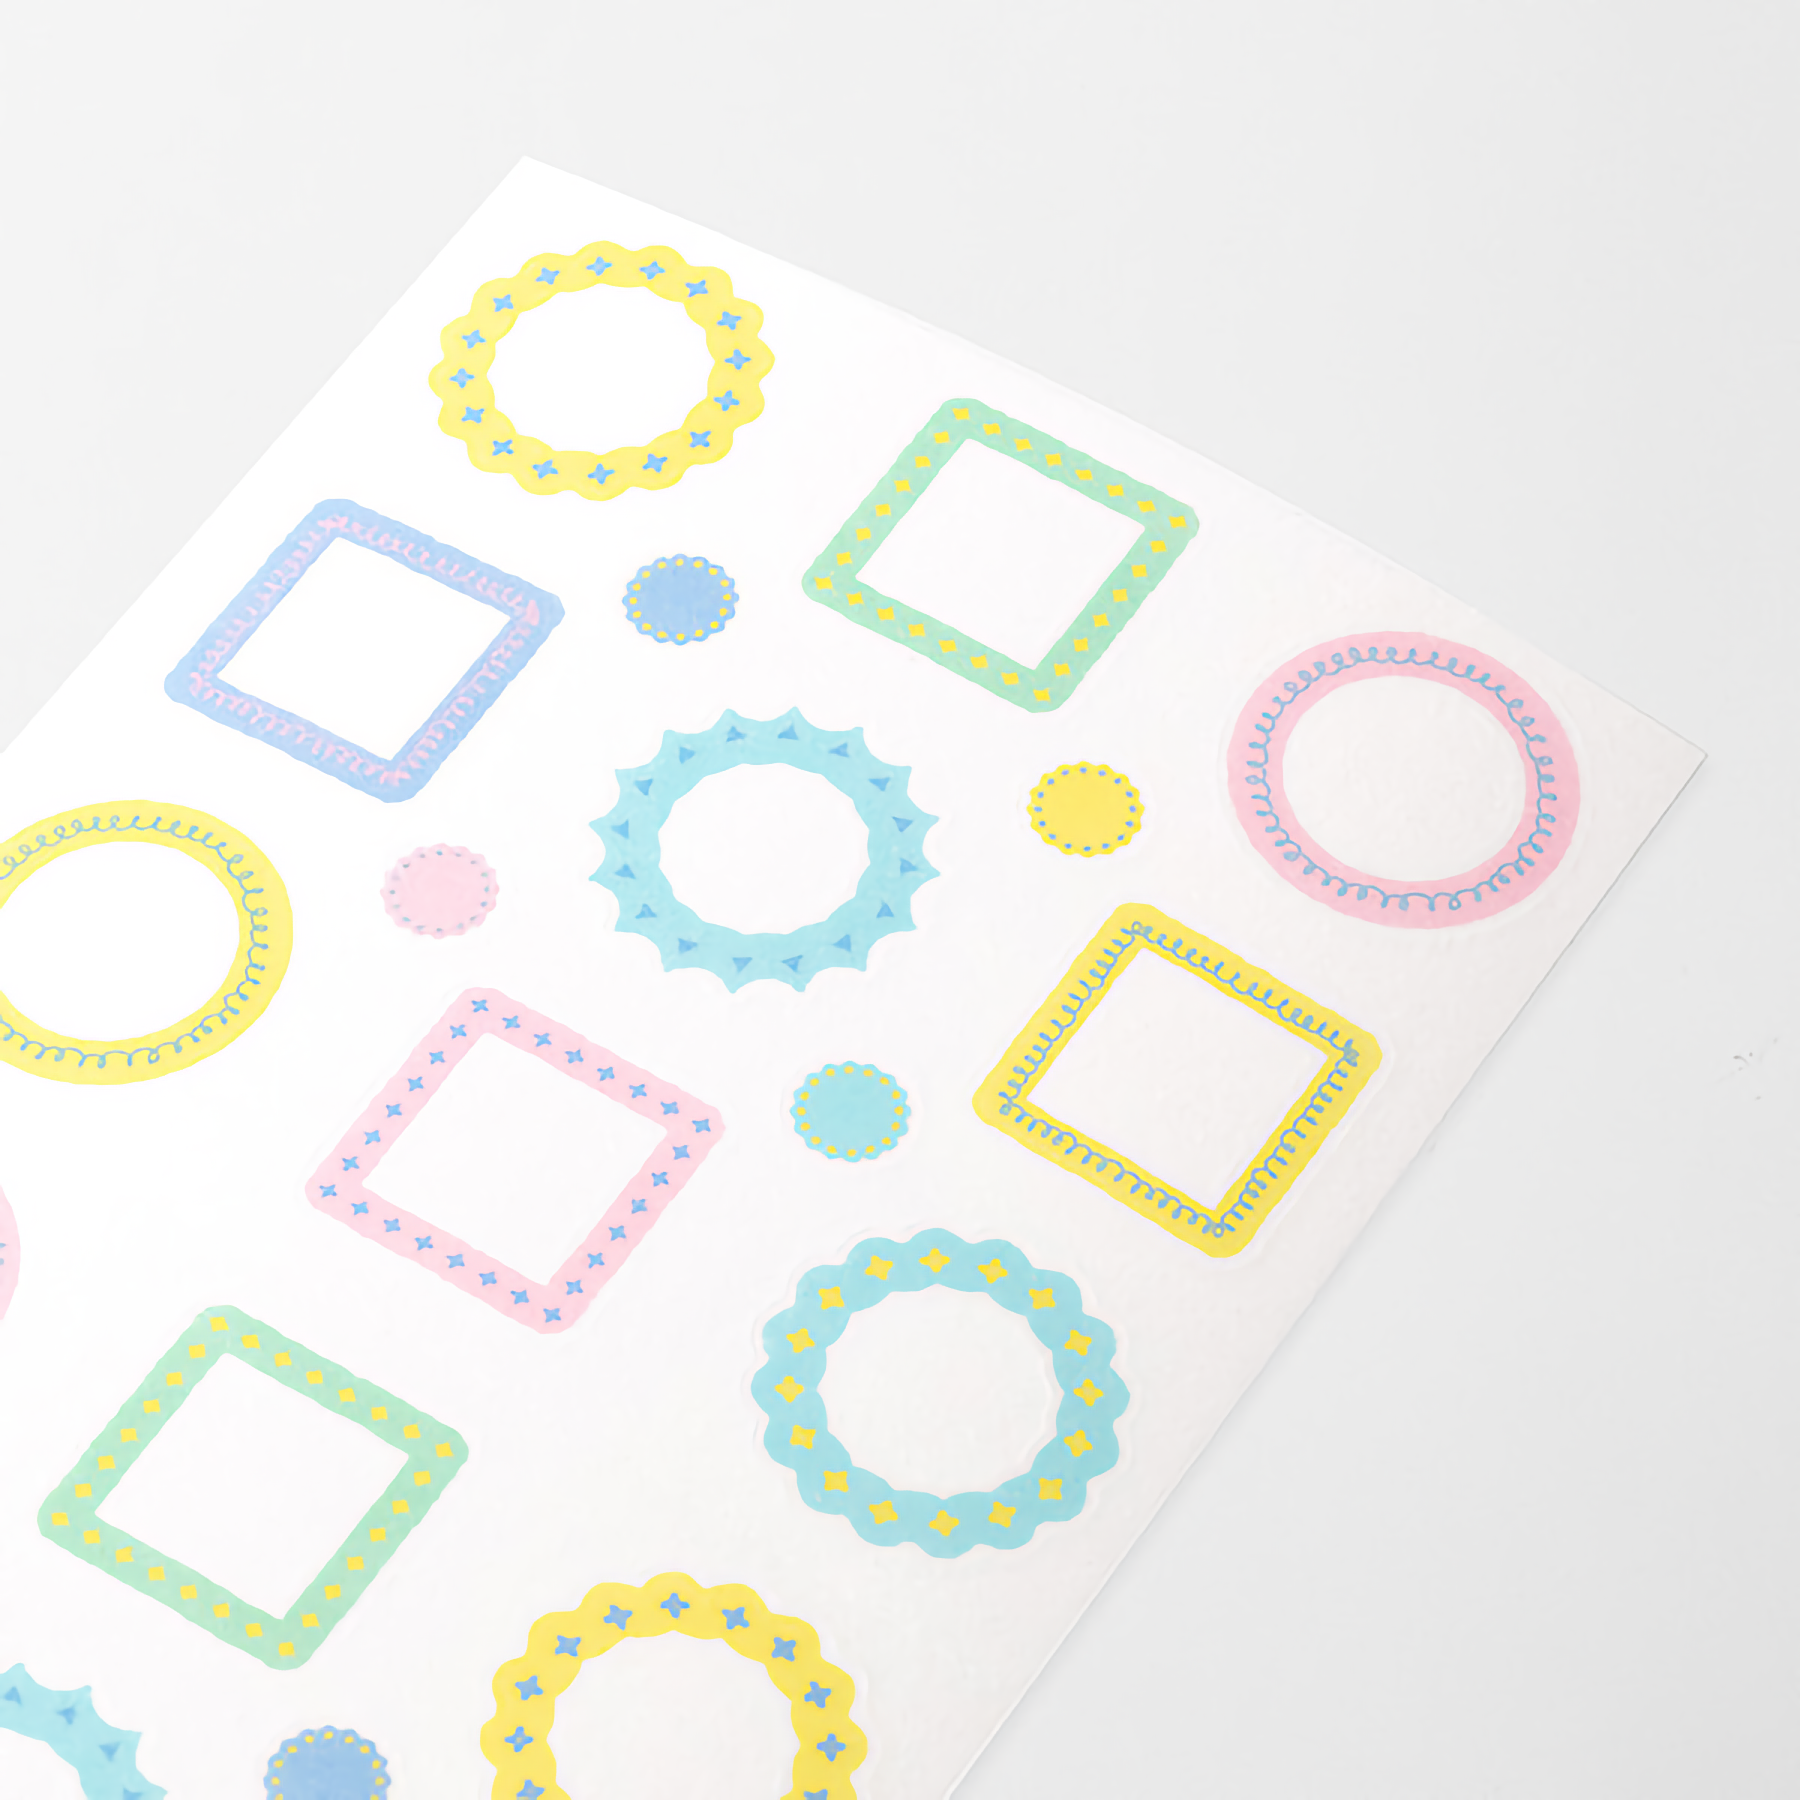 Midori Sticker Collection Schedule Frame